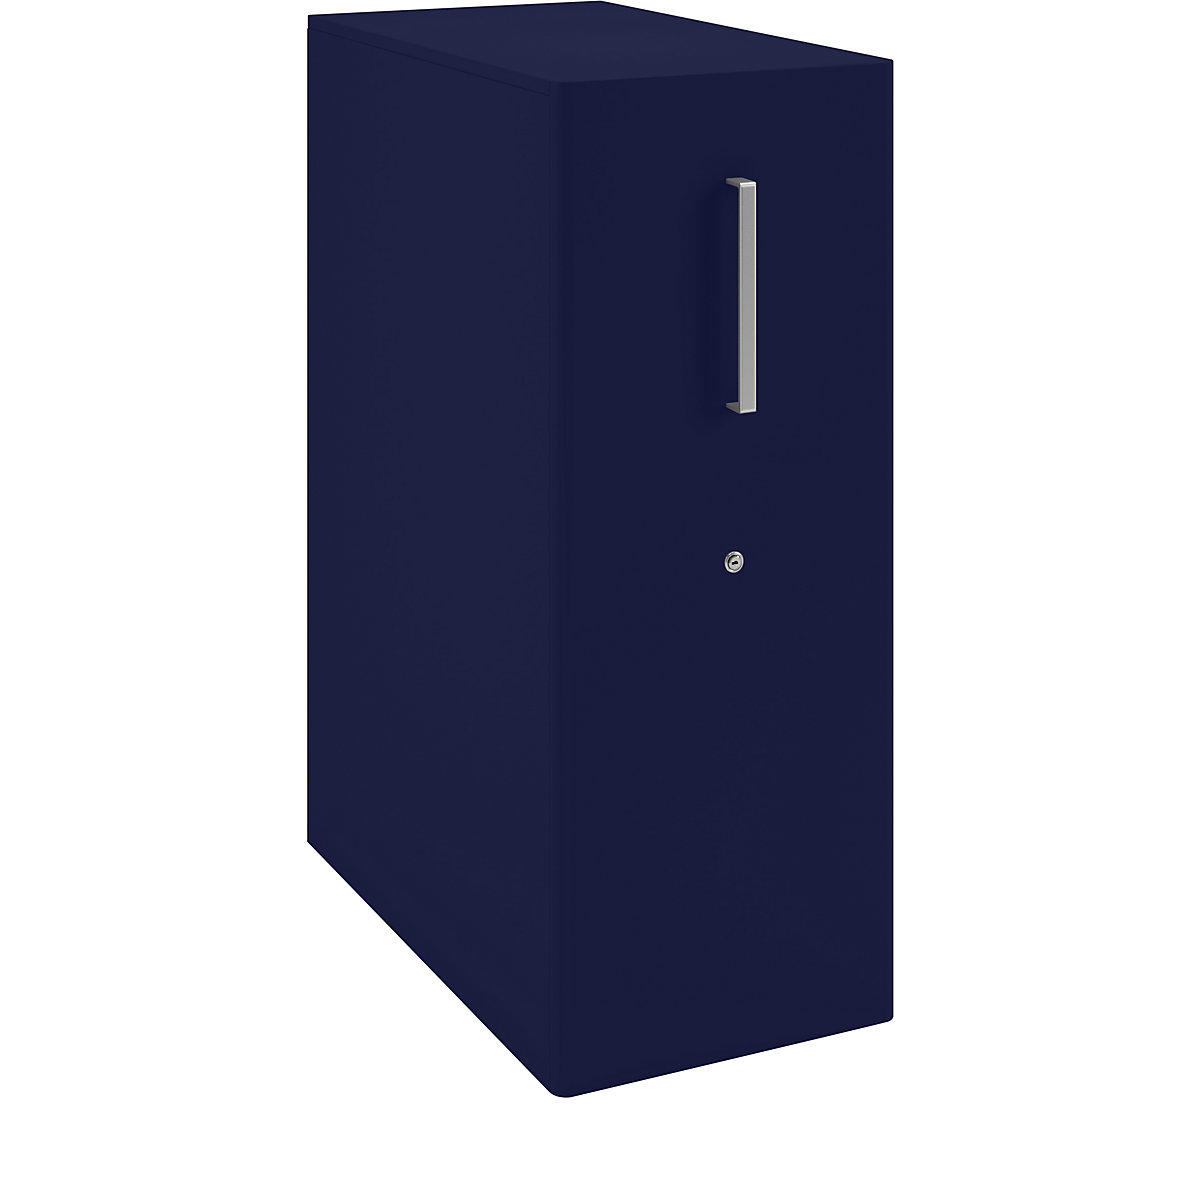 Assistentiemeubel Tower™ 4, met bovenblad en 1 prikbord – BISLEY, linksstaand, 1 legbord, oxfordblauw-9